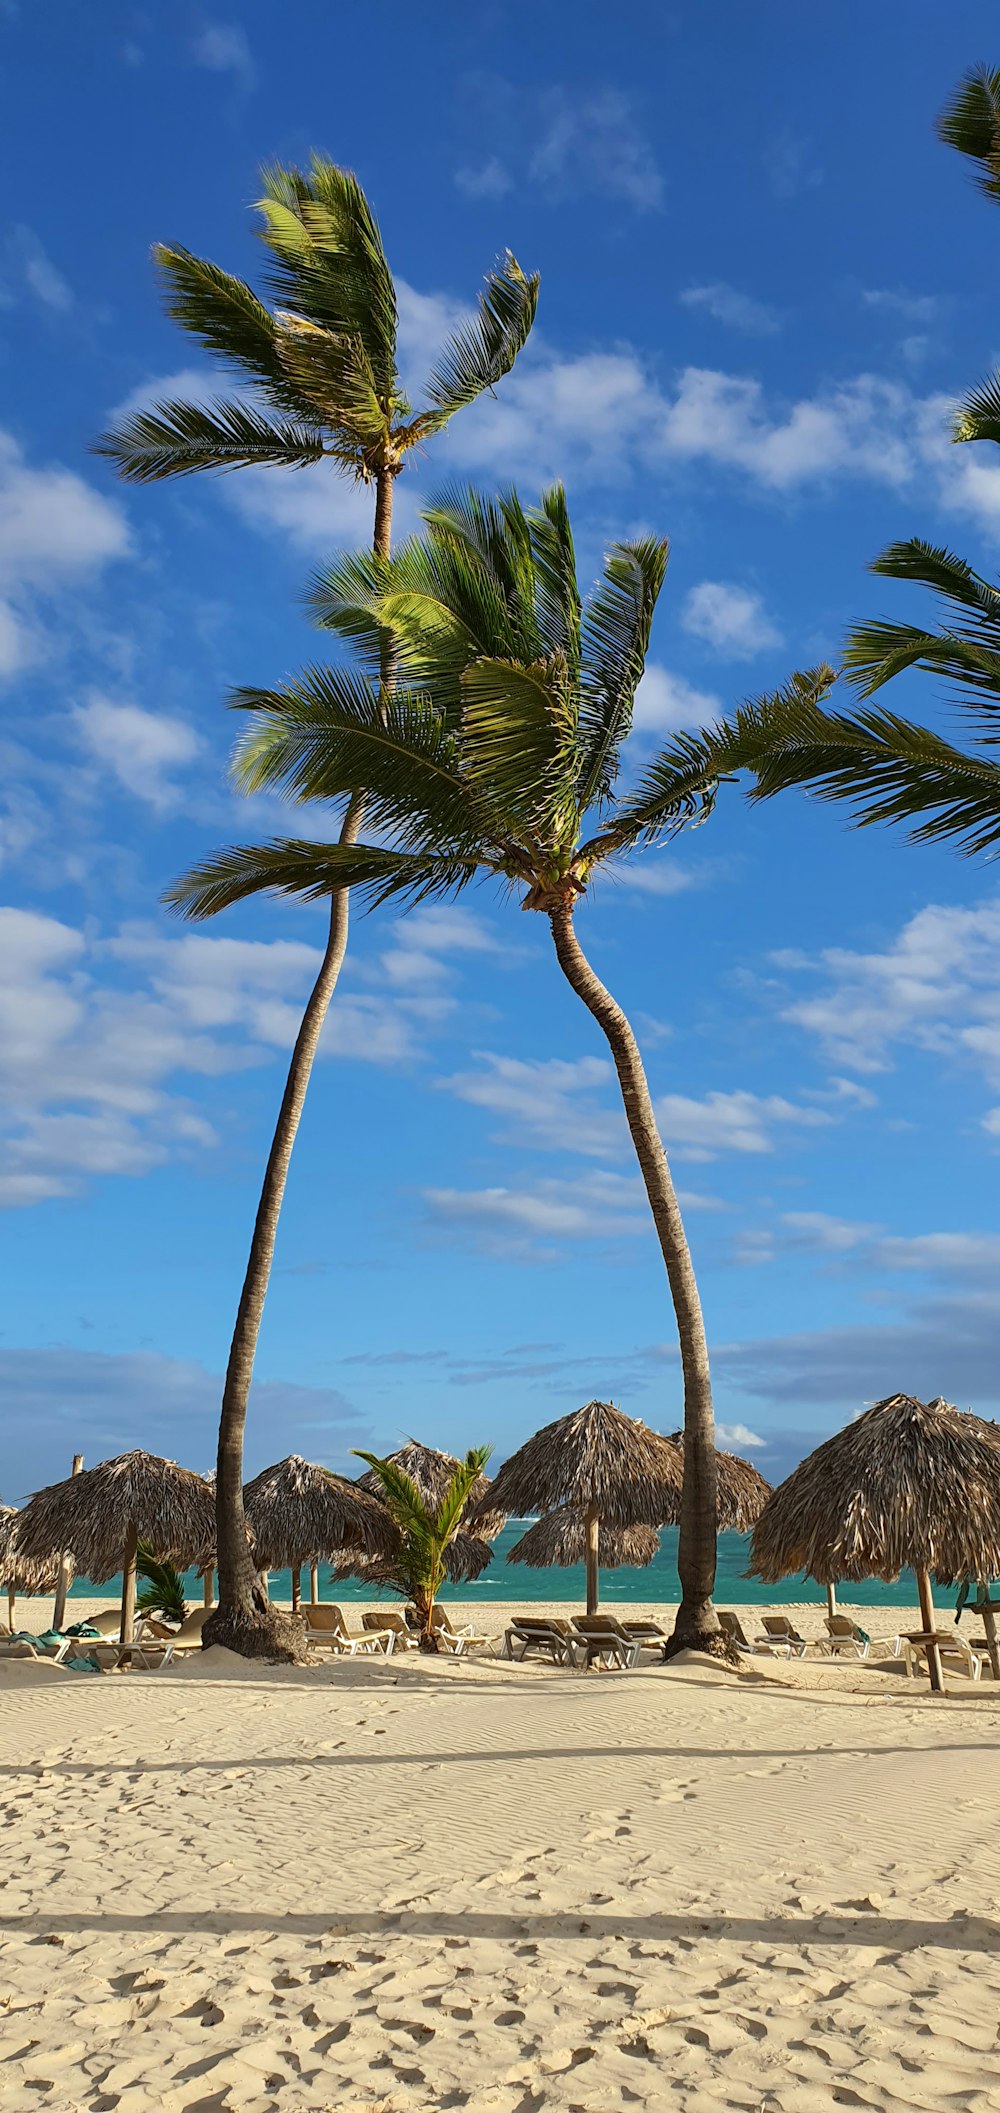 una playa de arena con palmeras y sombrillas con techo de paja